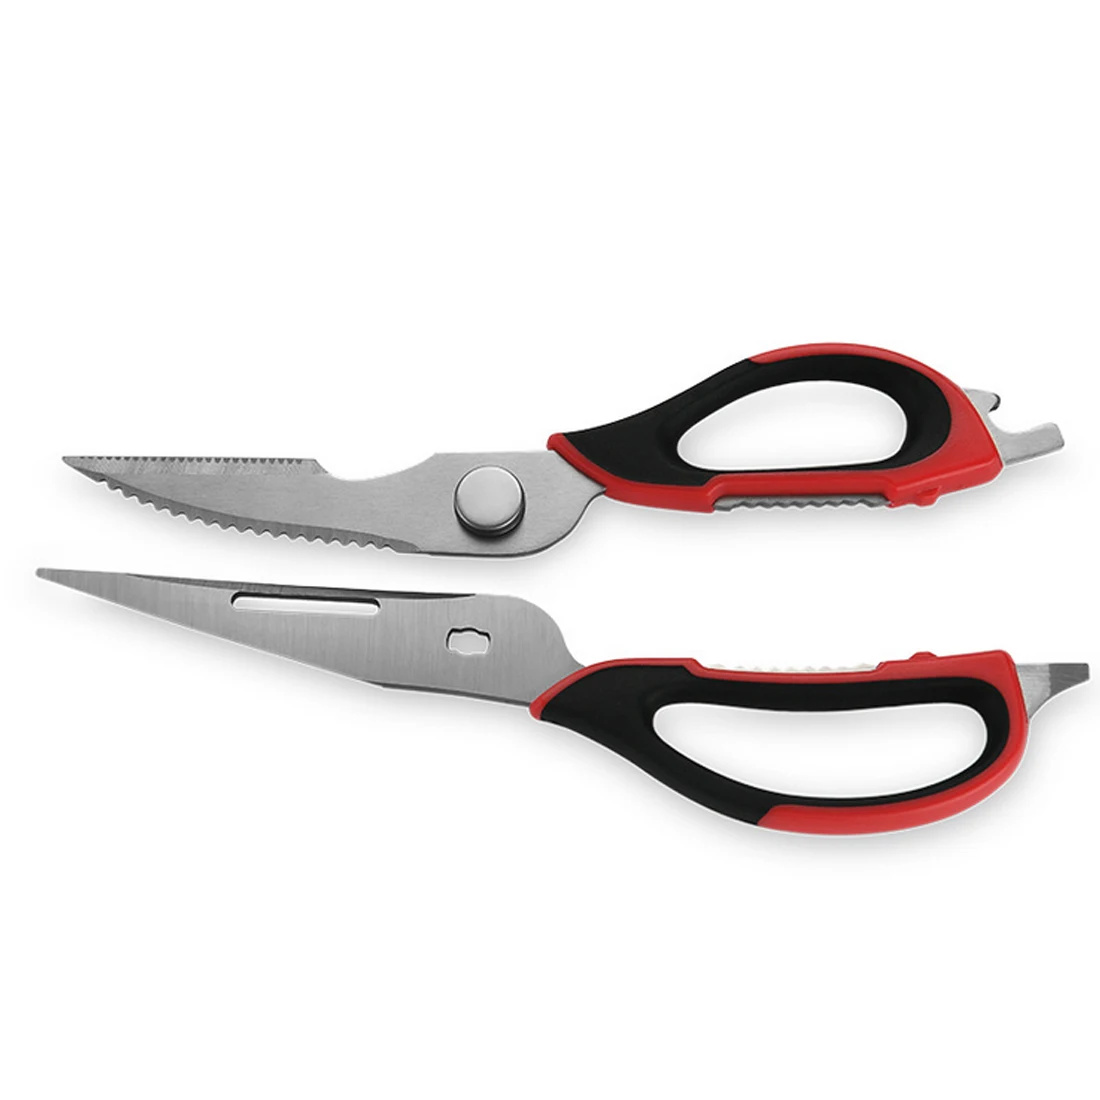 Кухонный нож ножницы. NEX Tool набор нож ножницы. Ножницы кухонные для рыбы. Кухонные ножницы мультифункциональные. Ножницы кухонные для рыбы и птицы.